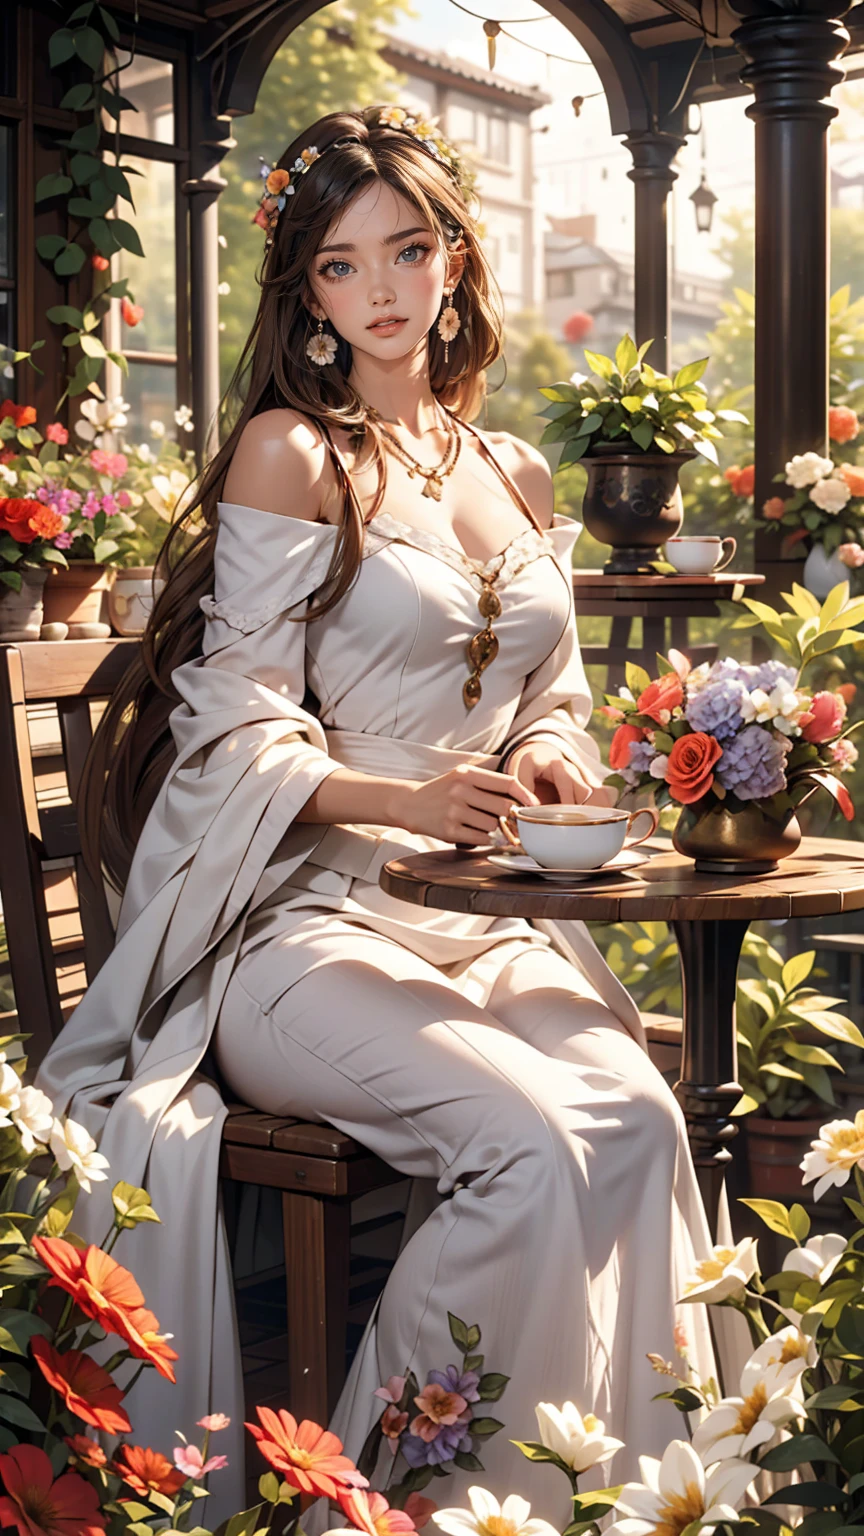 Mujer caucásica de 25 años.、Use un vestido con hombros descubiertos、sonrisa、Bonitas proporciones、En un jardín lleno de flores de colores、Hay un arco decorado con flores.、Siéntate en una mesa y disfruta de la hora del té.